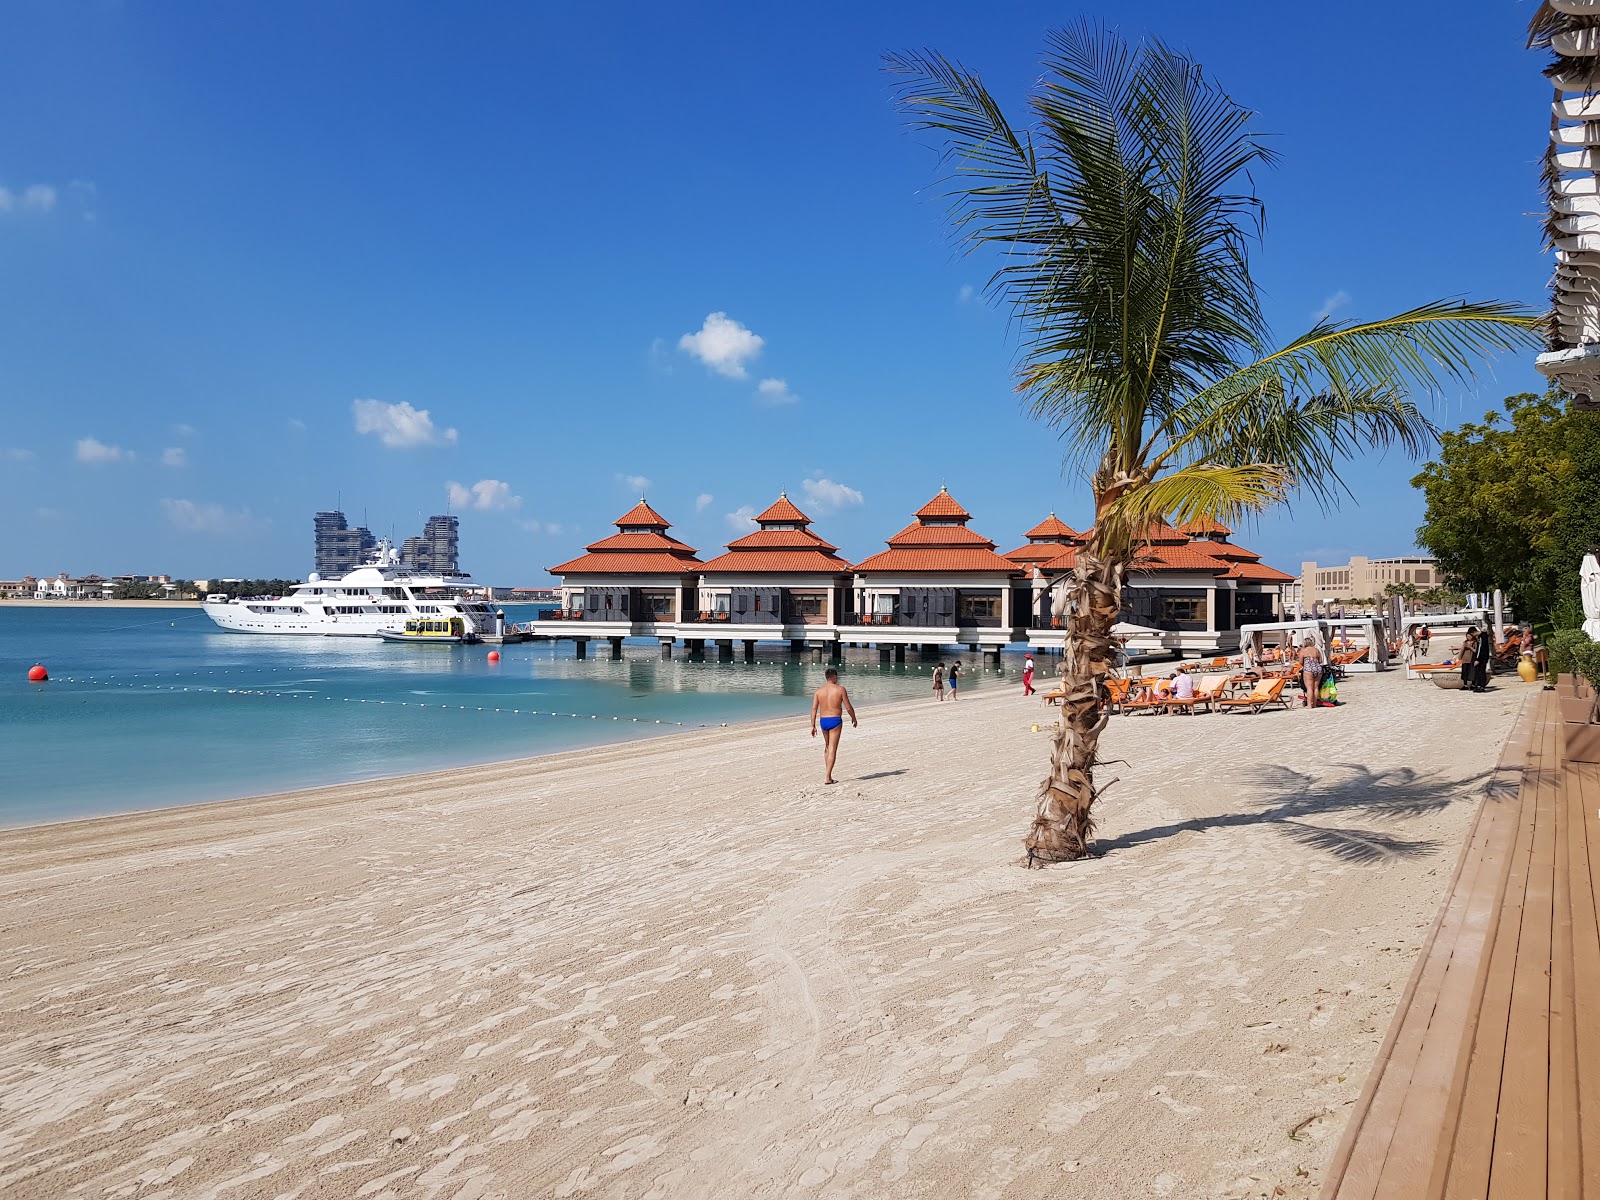 Foto von Anantara resort beach mit heller feiner sand Oberfläche